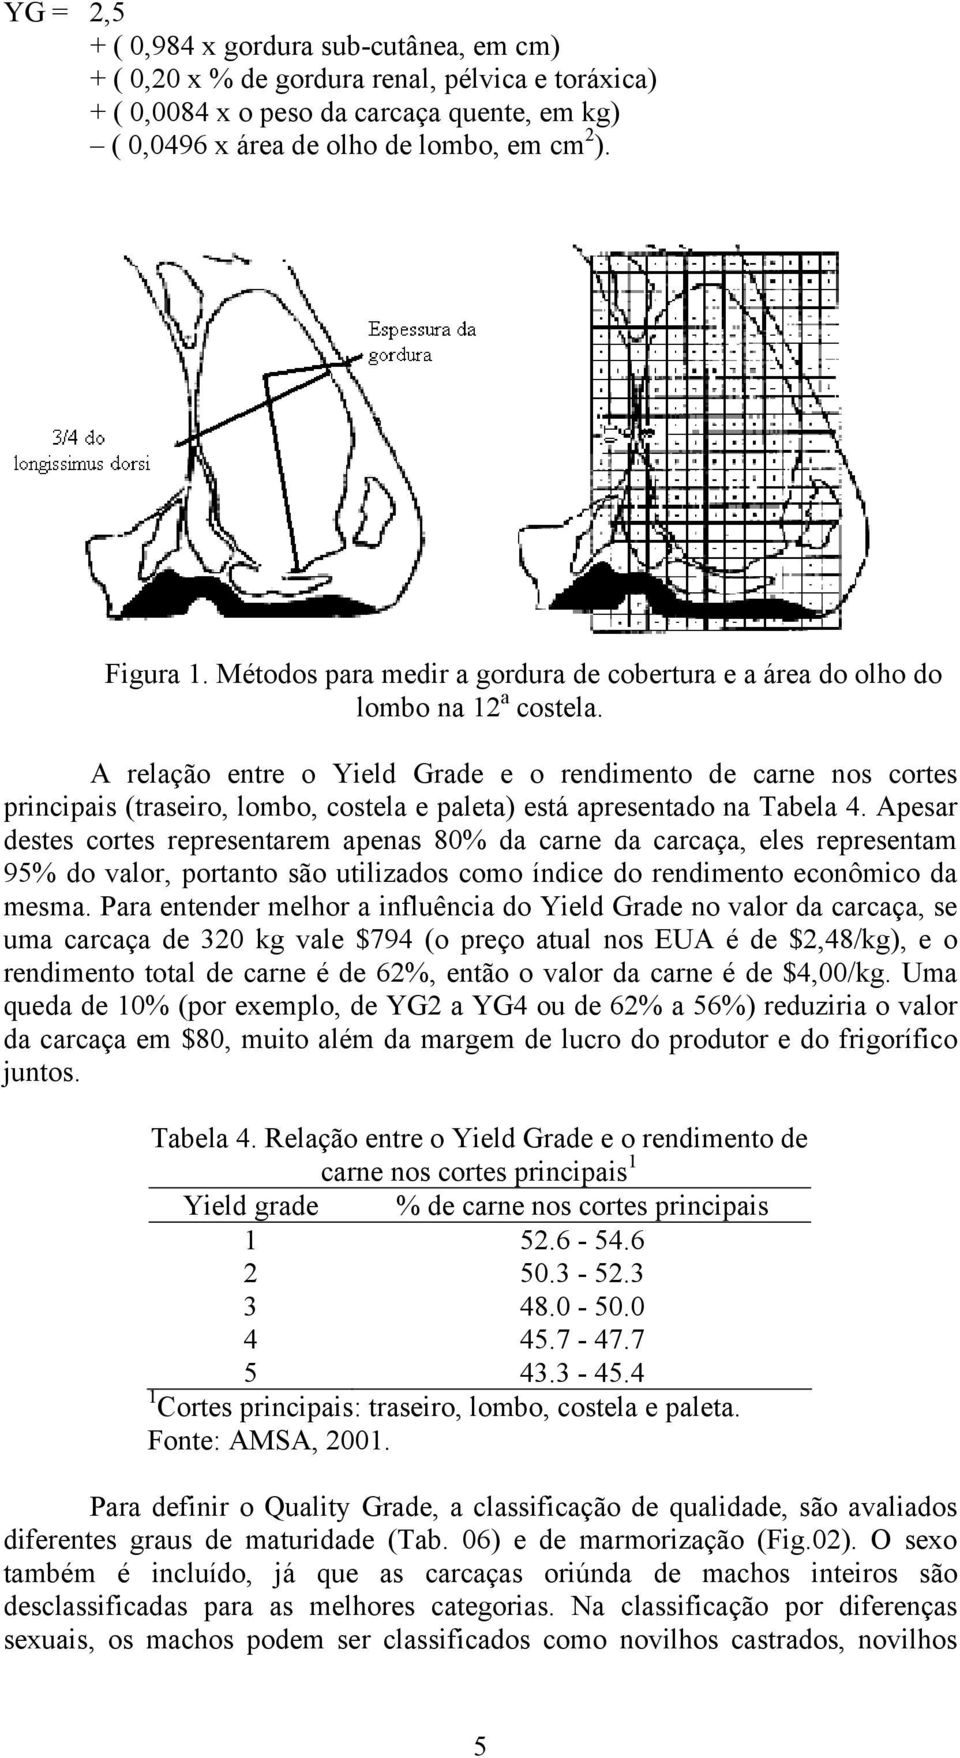 A relação entre o Yield Grade e o rendimento de carne nos cortes principais (traseiro, lombo, costela e paleta) está apresentado na Tabela 4.